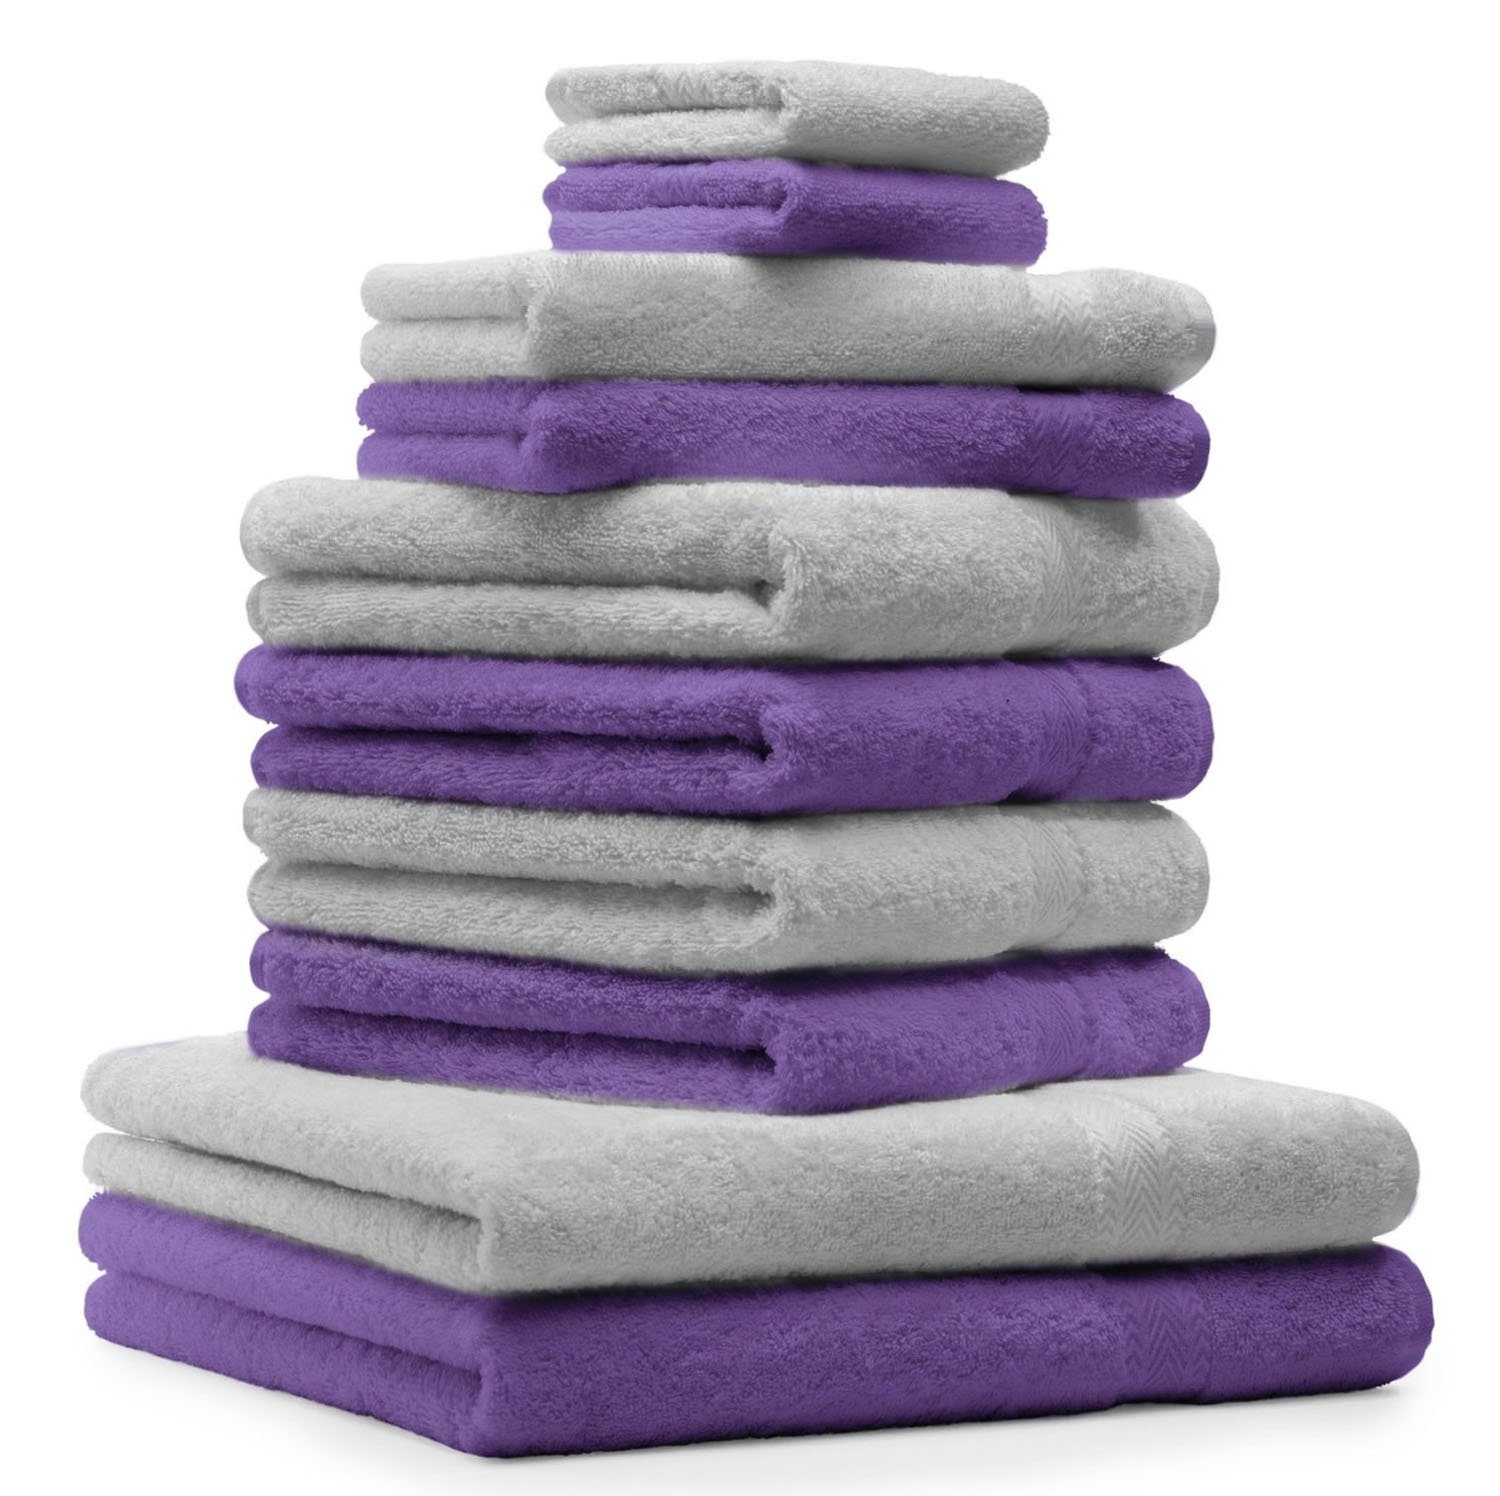 Betz Handtuch Set 10-TLG. Handtuch-Set Premium 100% Baumwolle 2 Duschtücher 4 Handtücher 2 Gästetücher 2 Waschhandschuhe Farbe Silber Grau & Lila, 100% Baumwolle, (10-tlg)